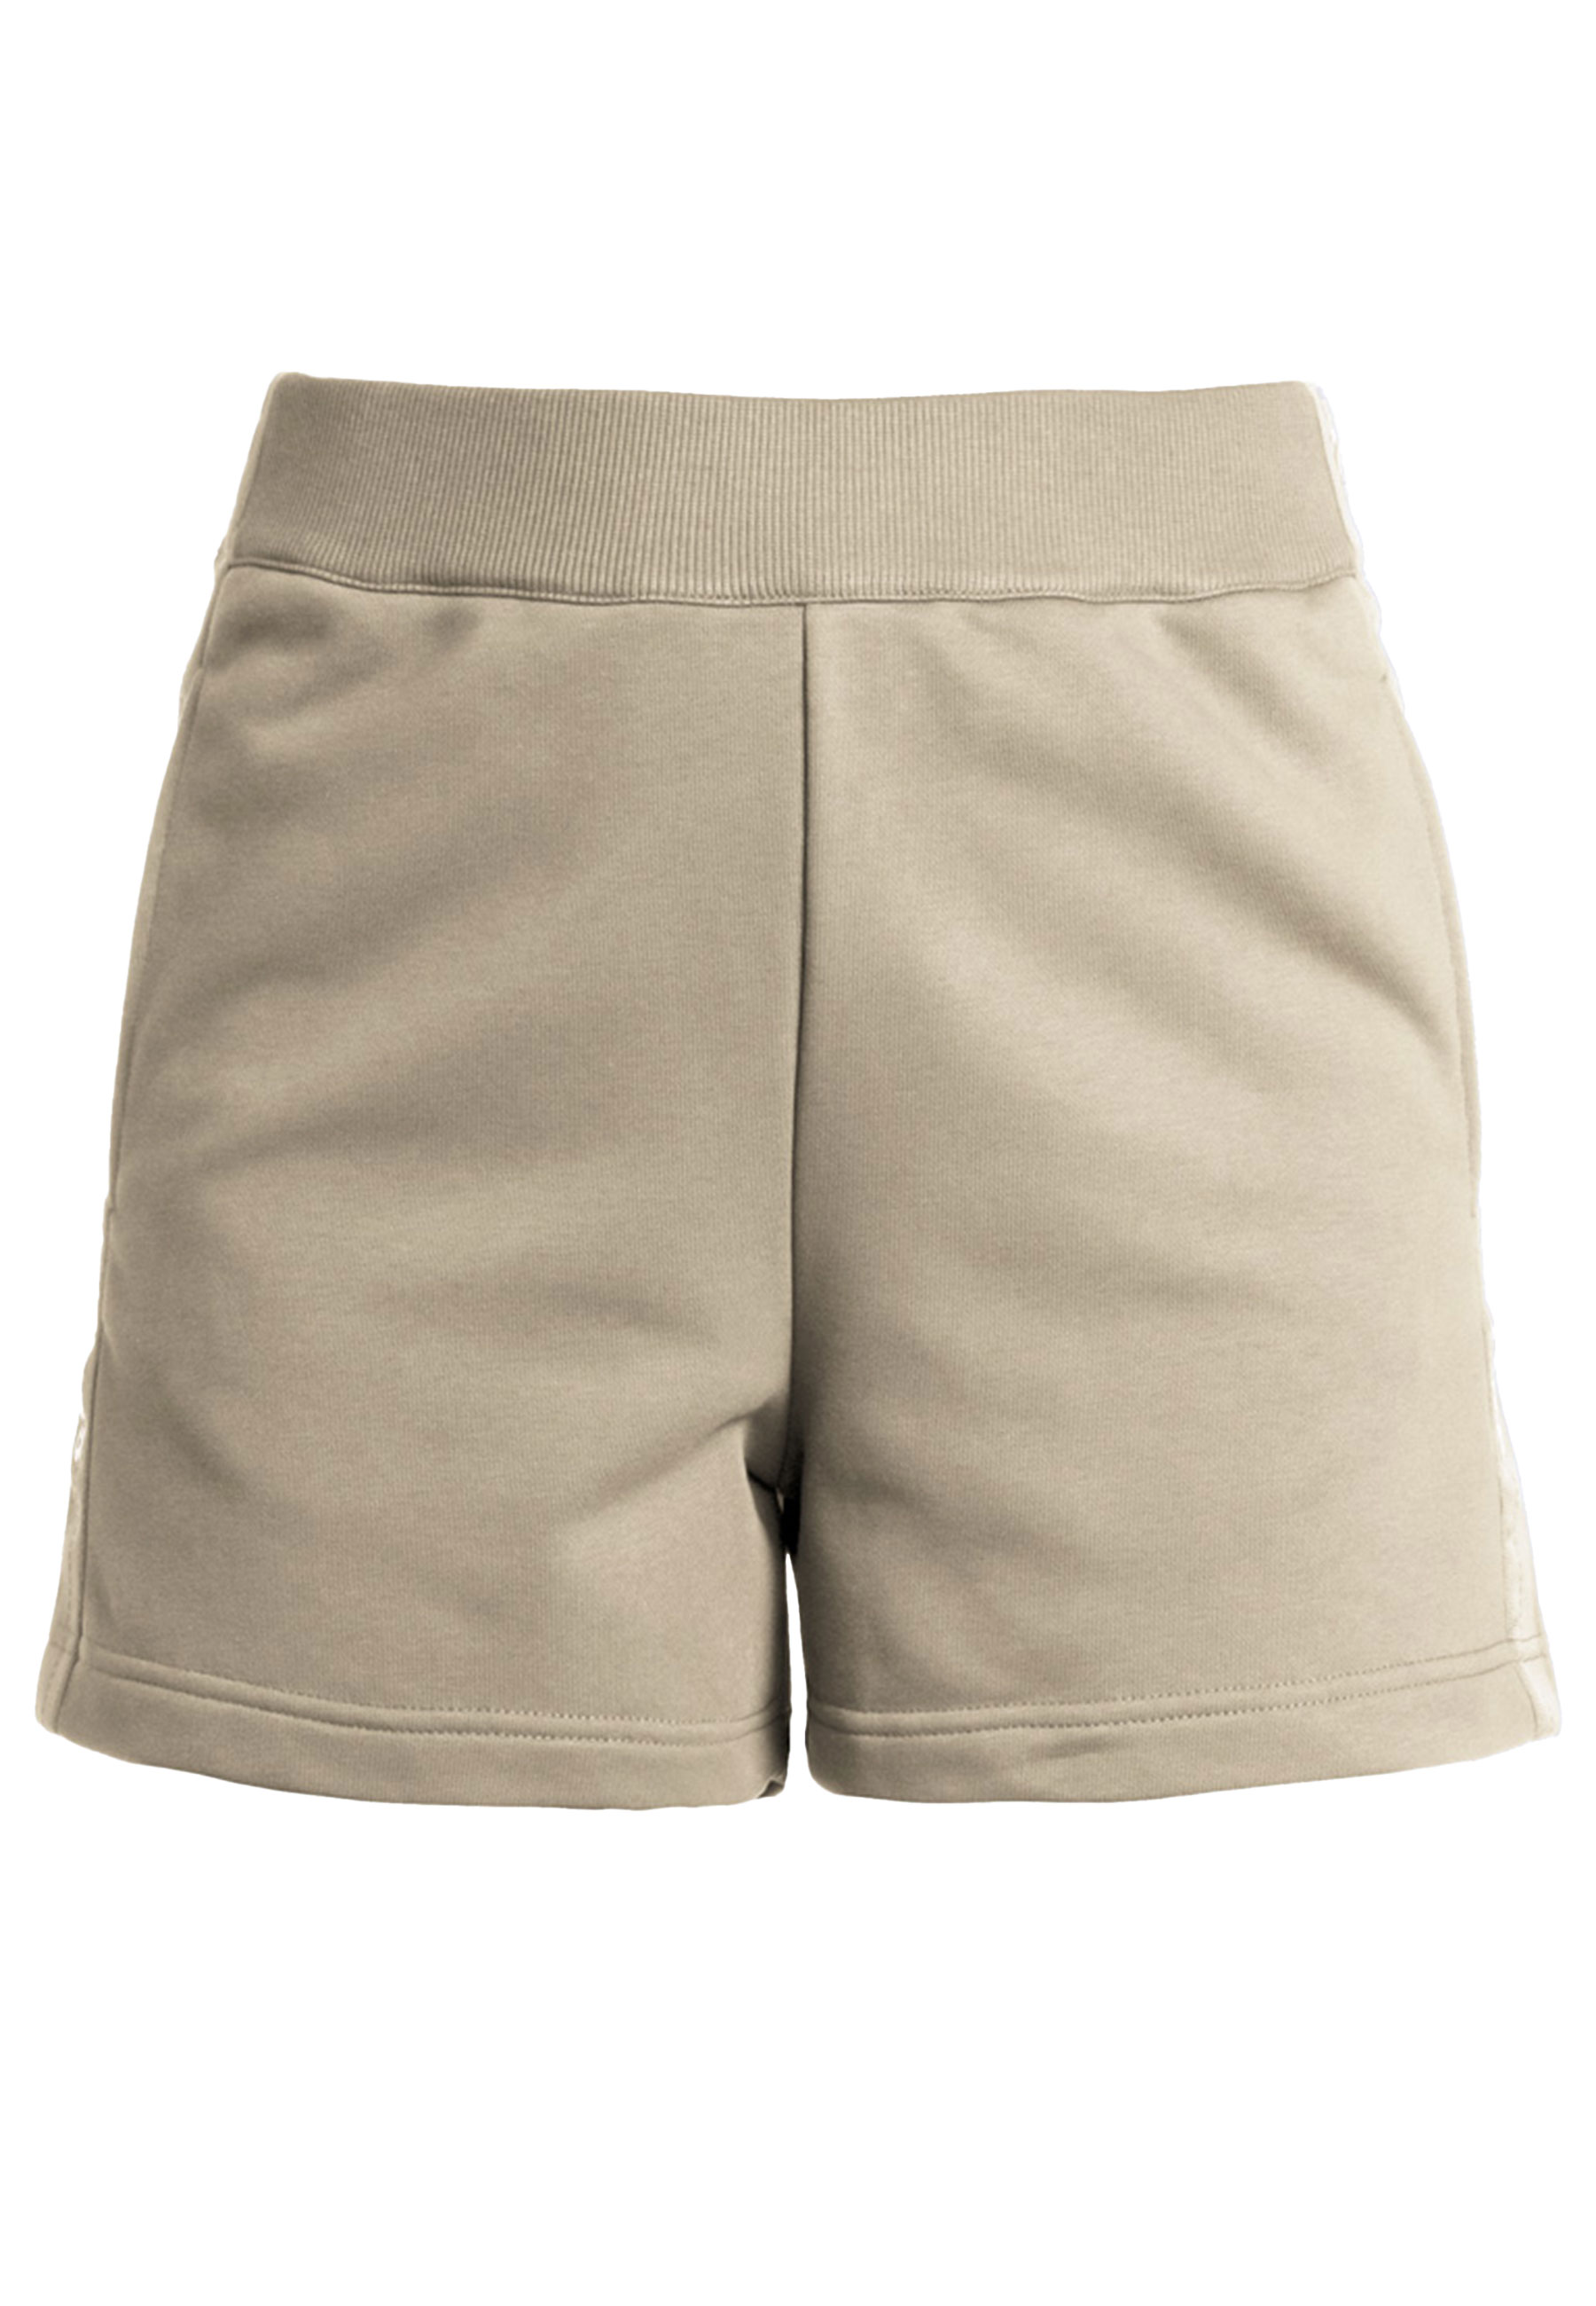 Broek Creme Terra shorts creme